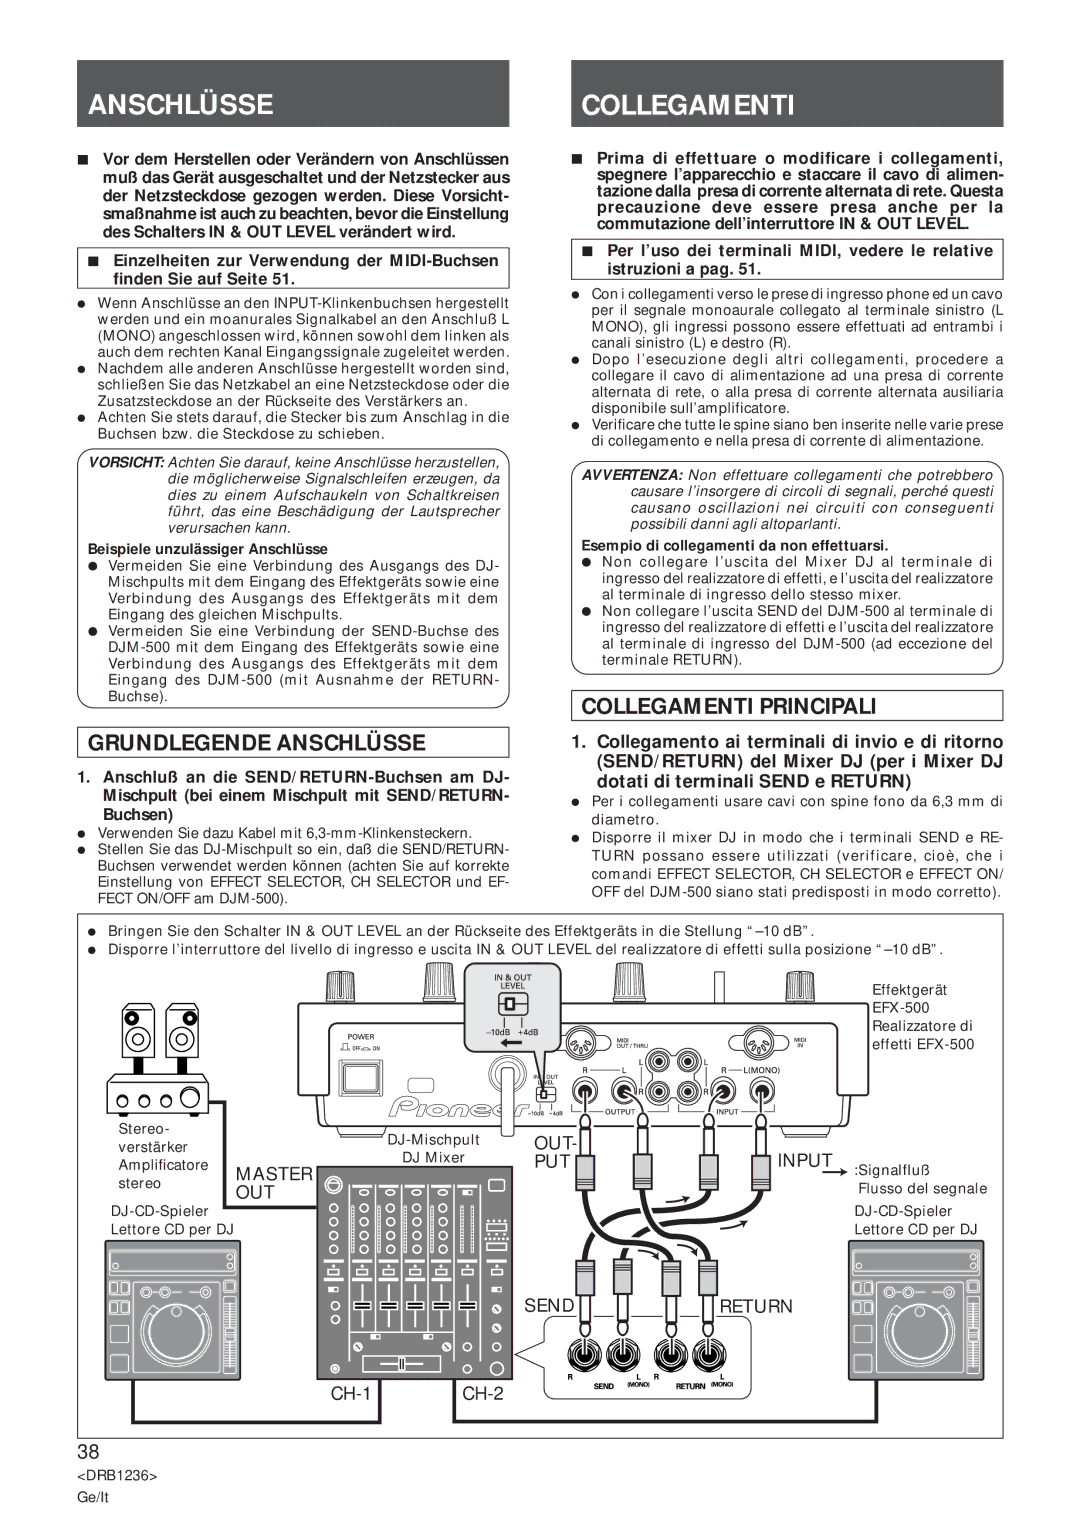 Pioneer Efx-500 operating instructions Anschlüssecollegamenti, Grundlegende Anschlüsse, Collegamenti Principali 